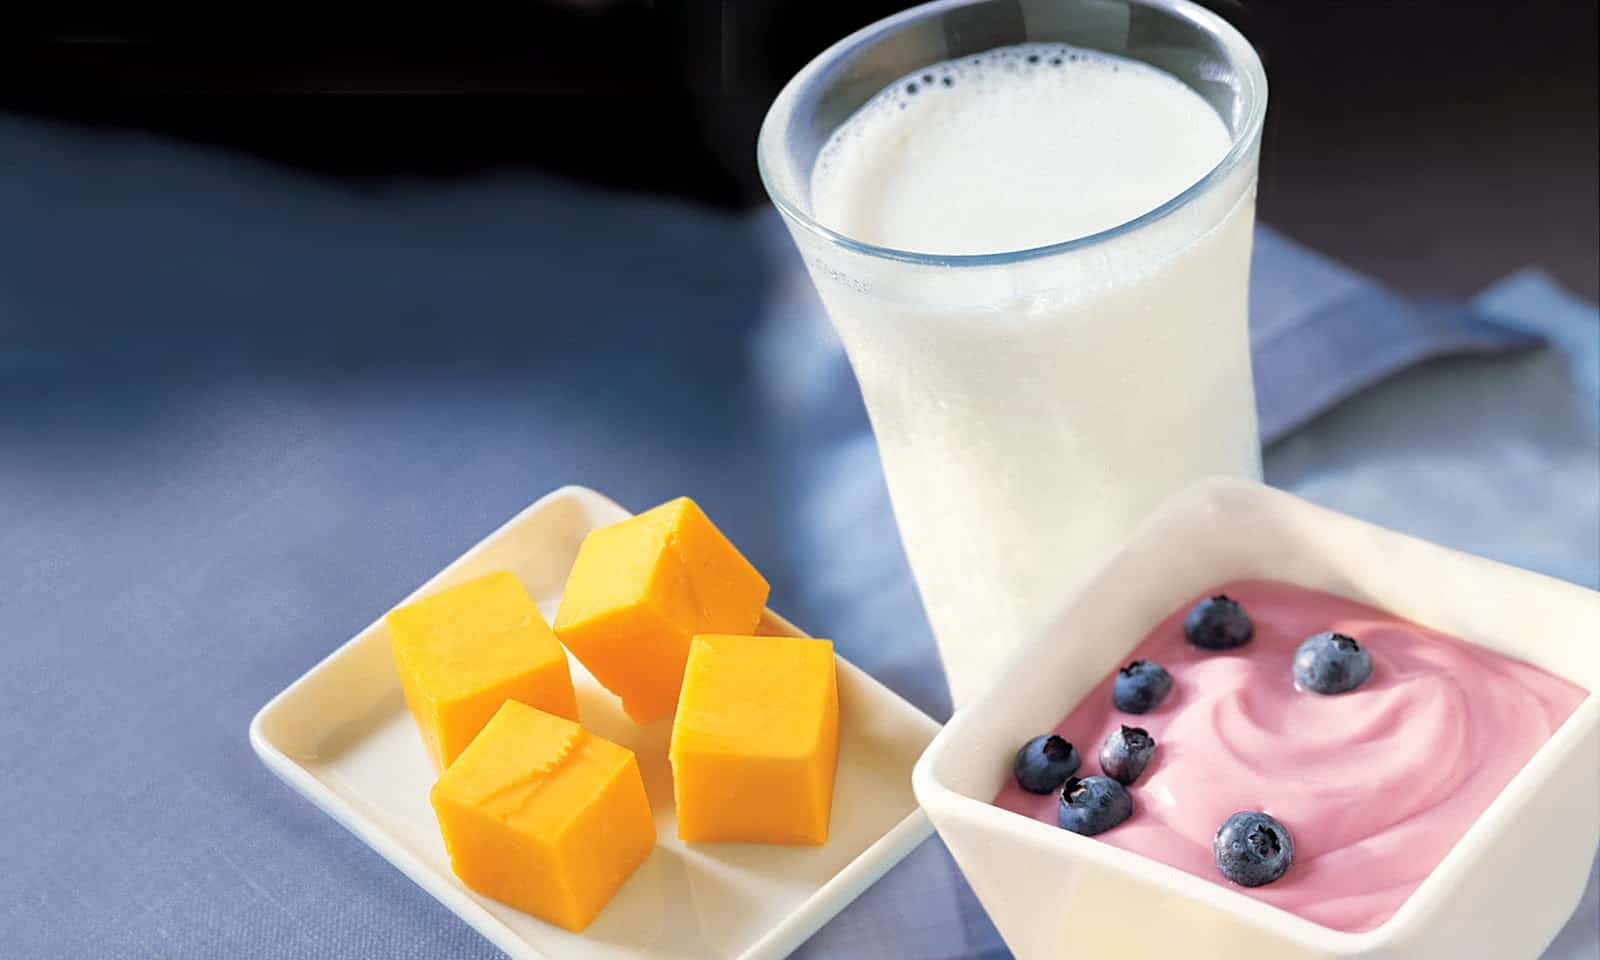 Mlijeko VS jogurt, što je zdravije za tijelo?